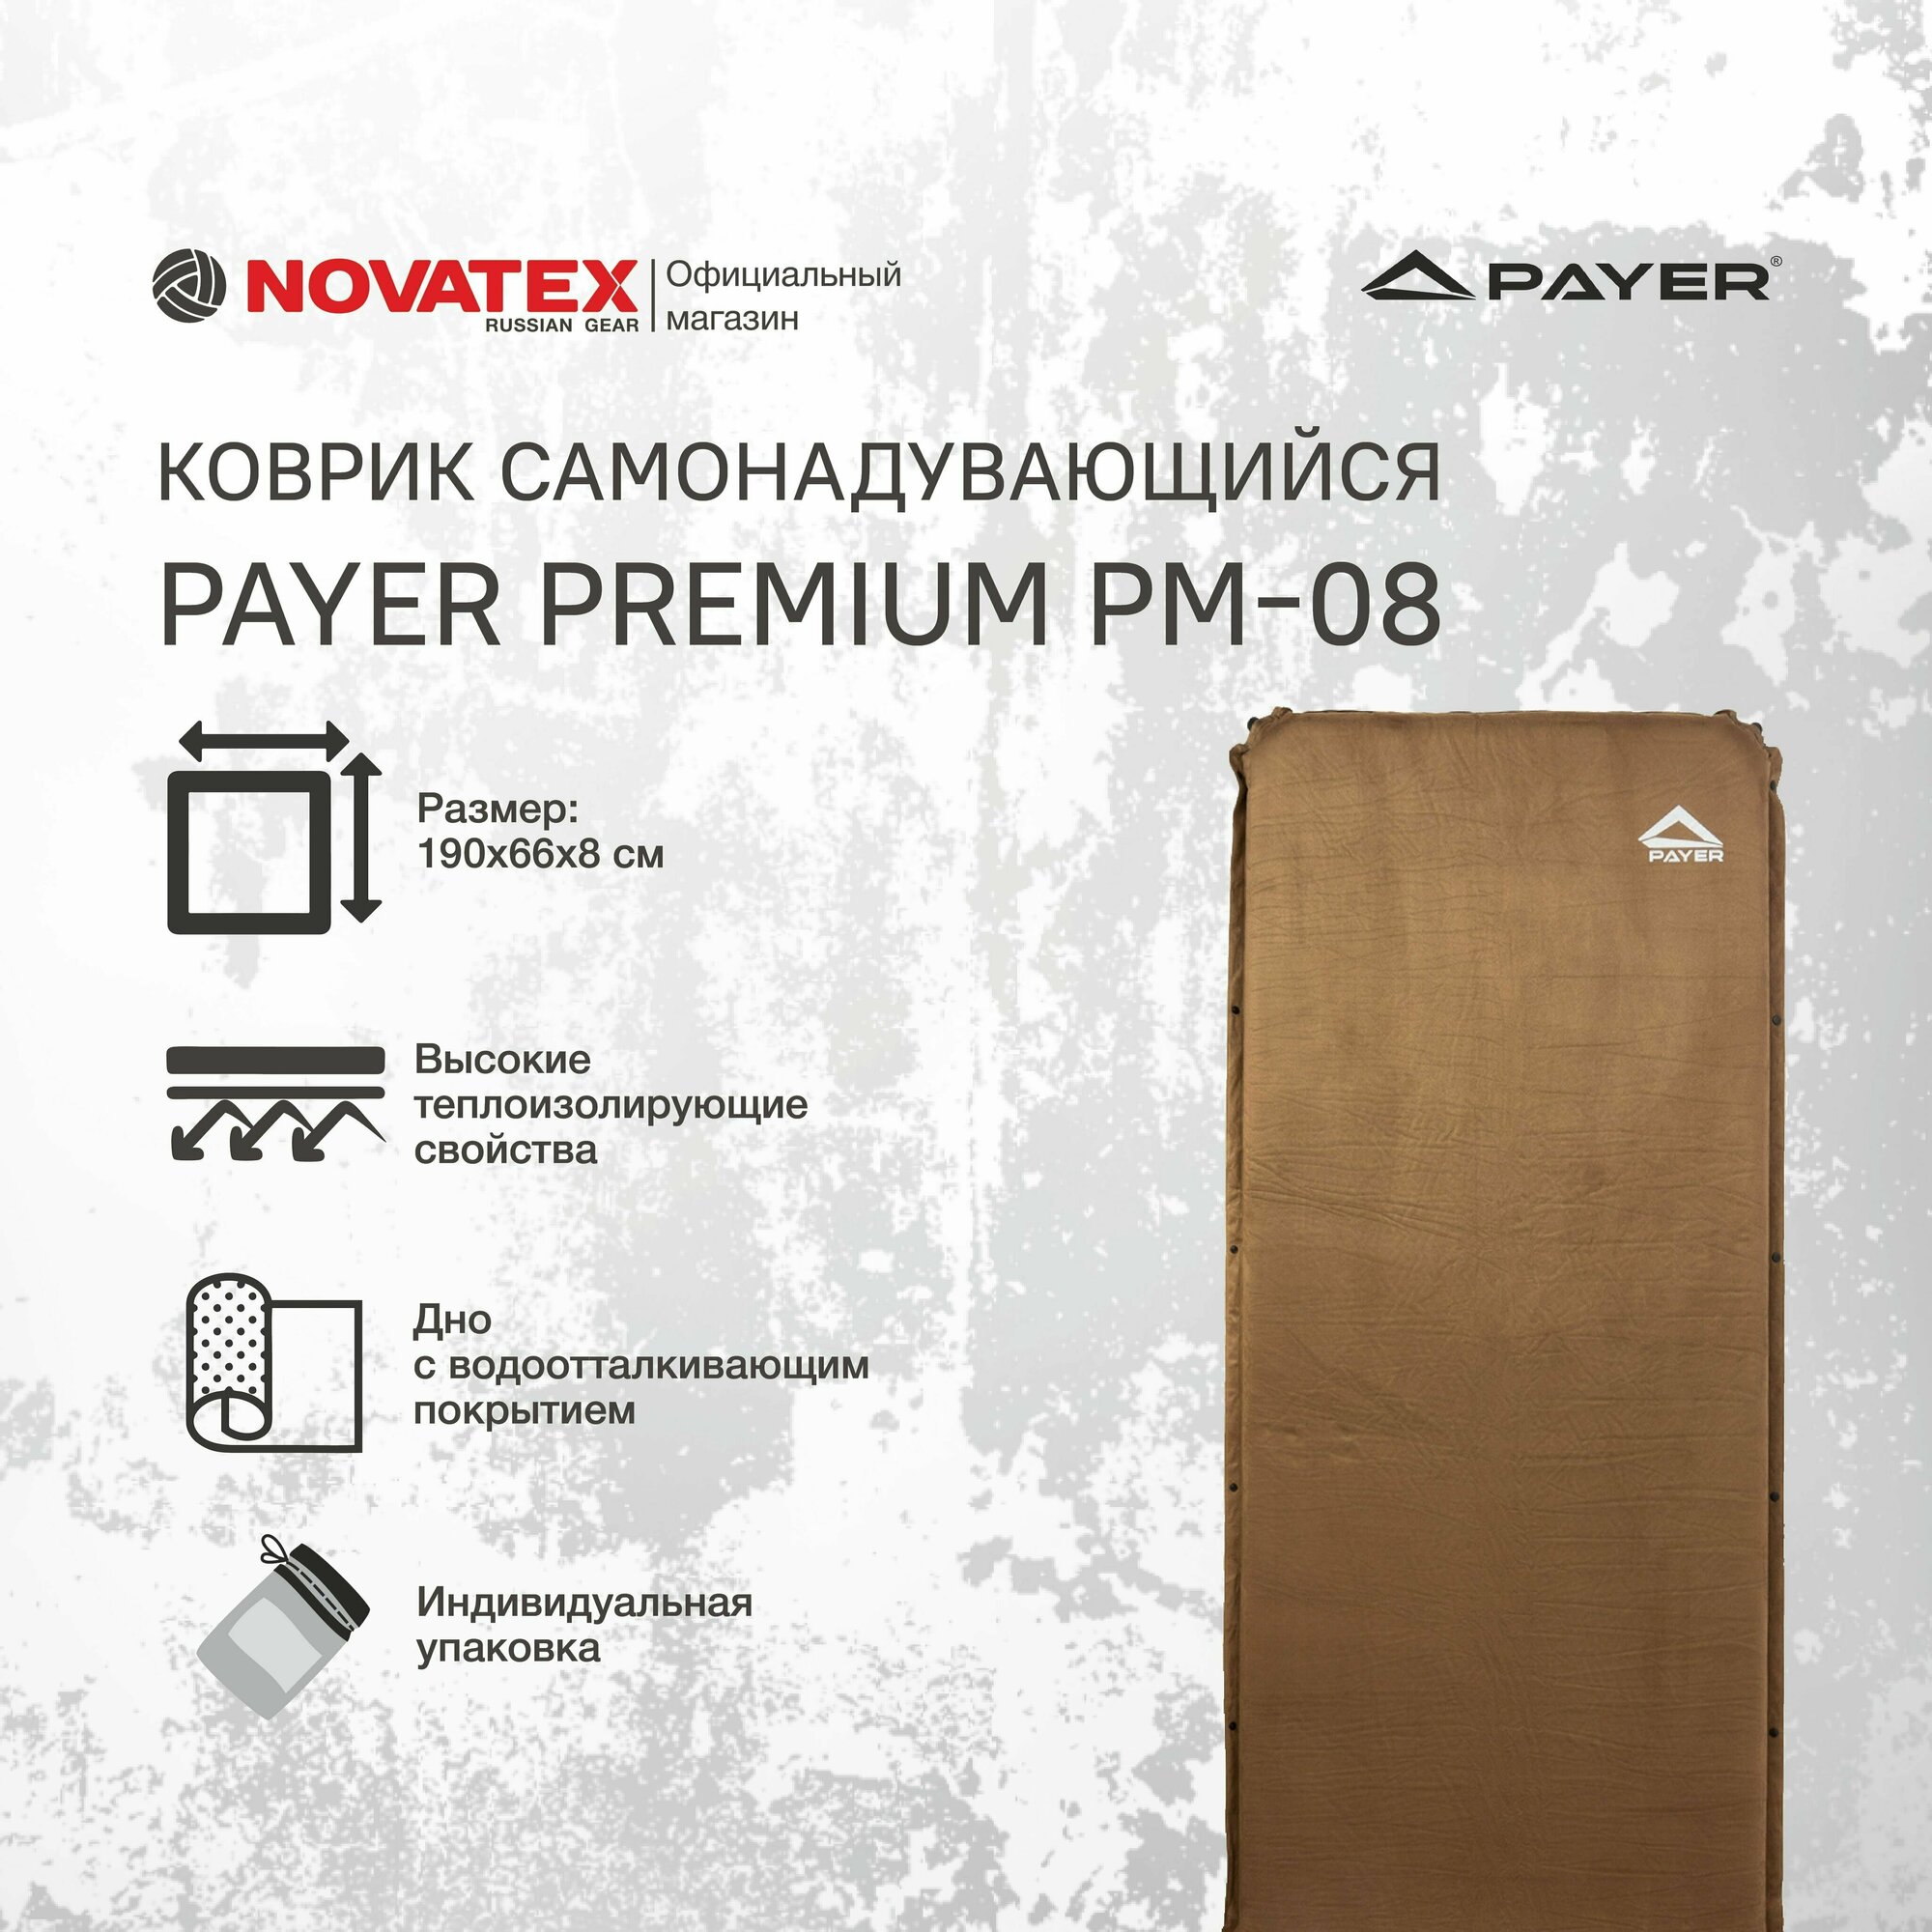 Коврик надувной / самонадувающийся туристический NOVATEX PAYER Premium PM-08